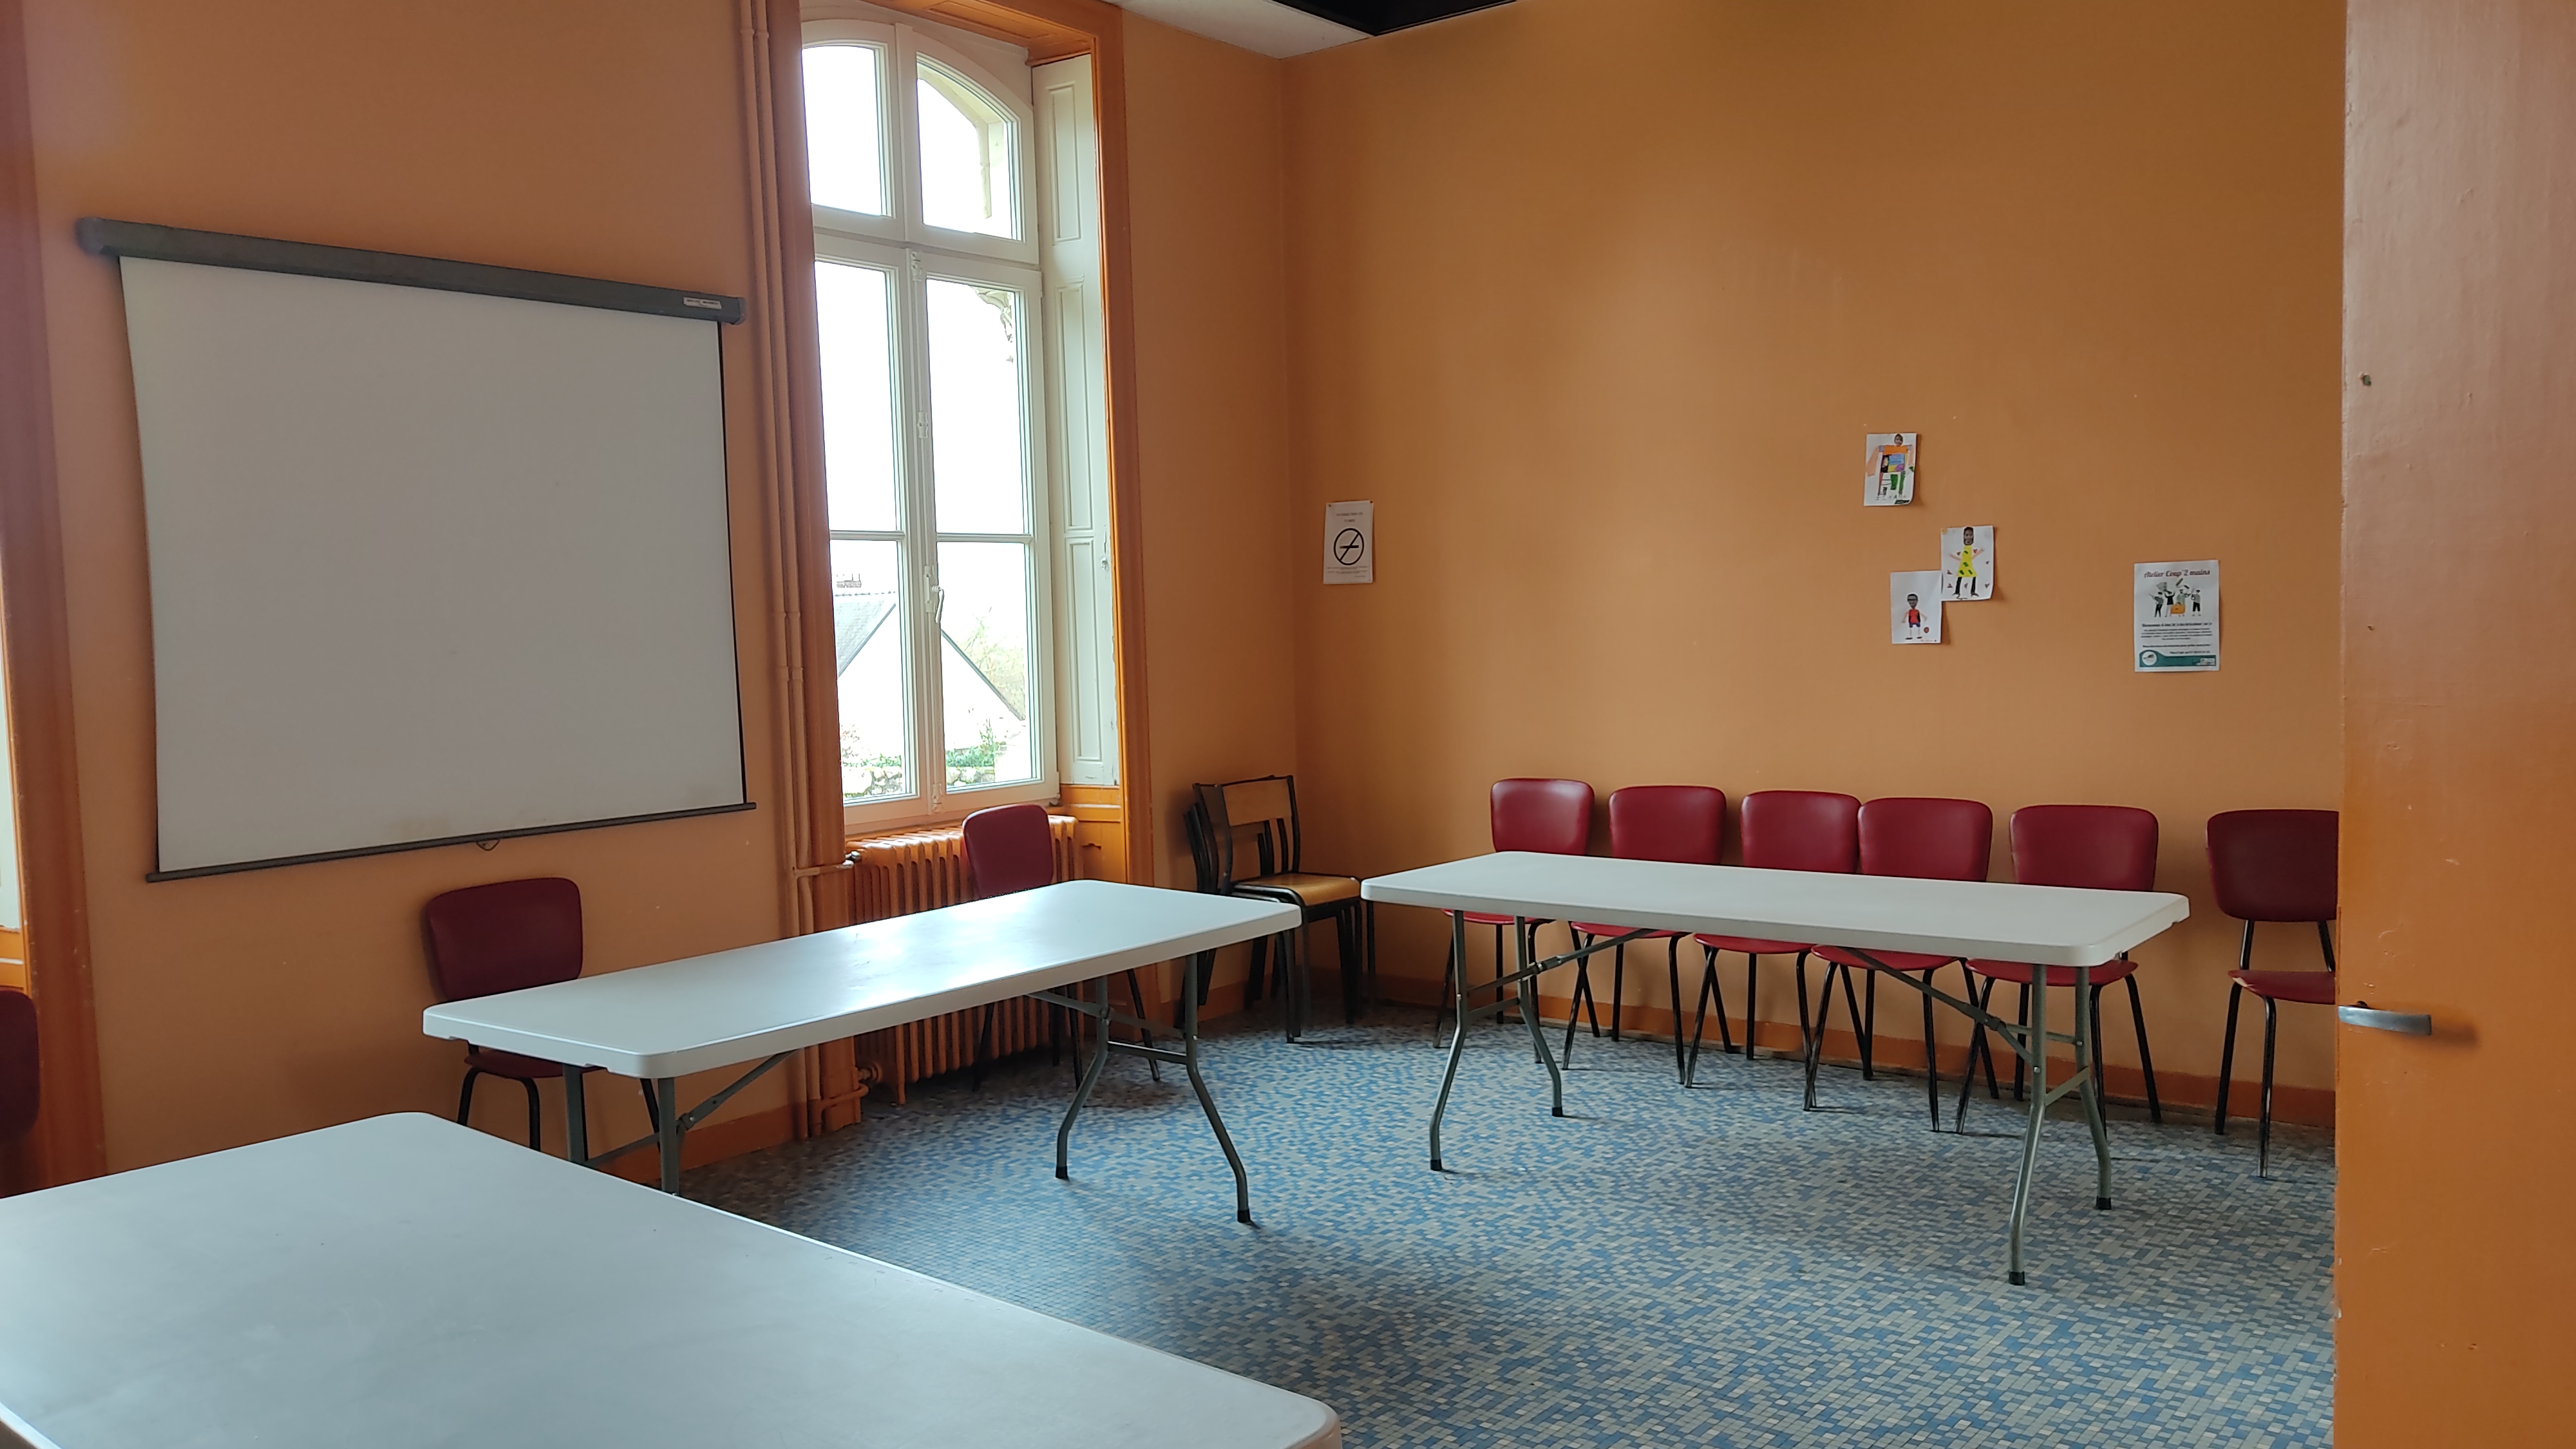 Au rez-de-chaussée du château, une salle accueille les réunions des associations de Saint-Saturnin-sur-Loire. ©RCF Anjou